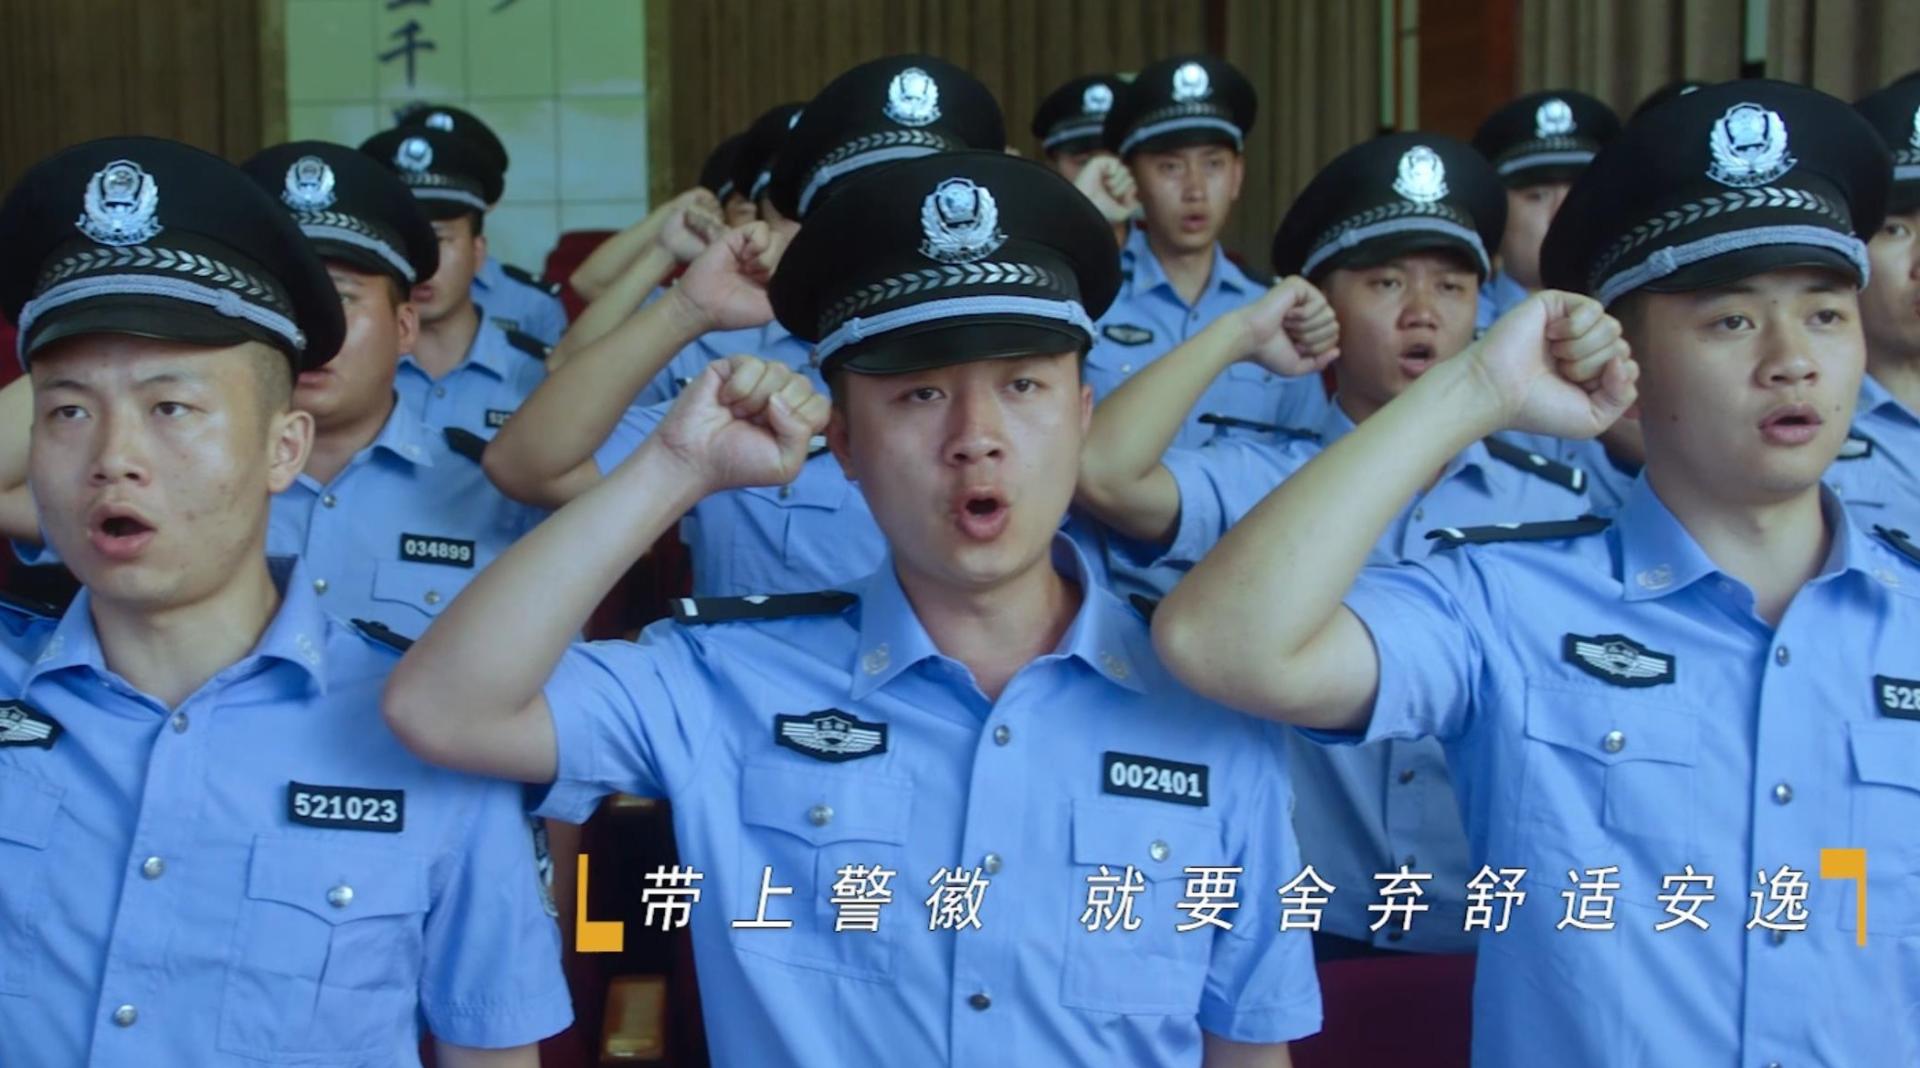 《我是人民警察》——2019 年贵阳第二届微视频大赛二等奖作品